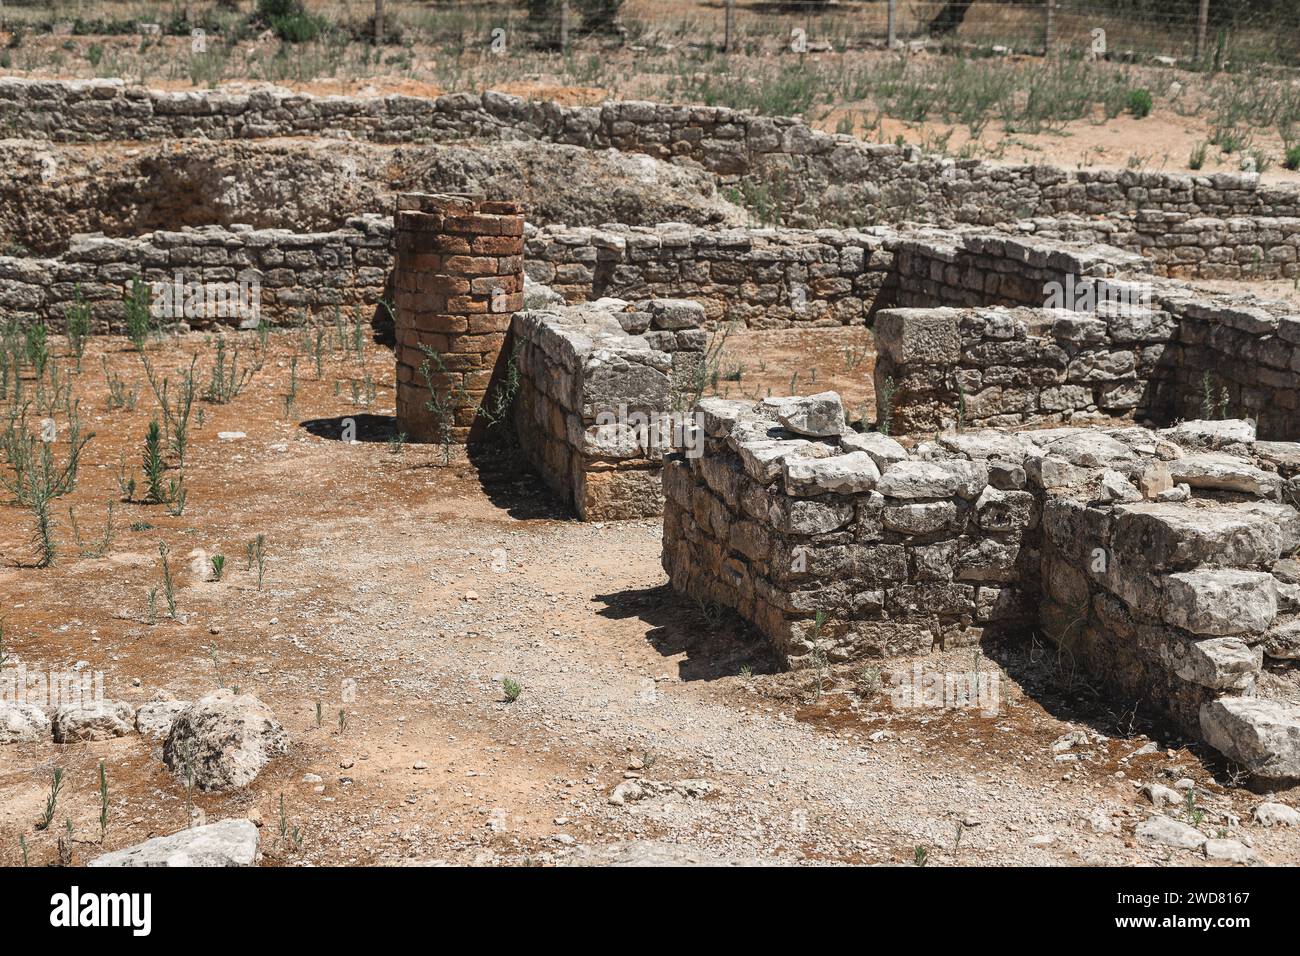 Bild der römischen Ruinen in Conimbriga, Portugal. Historische Elemente, die an der Stätte in archäologischen Arbeiten gefunden wurden. Stockfoto